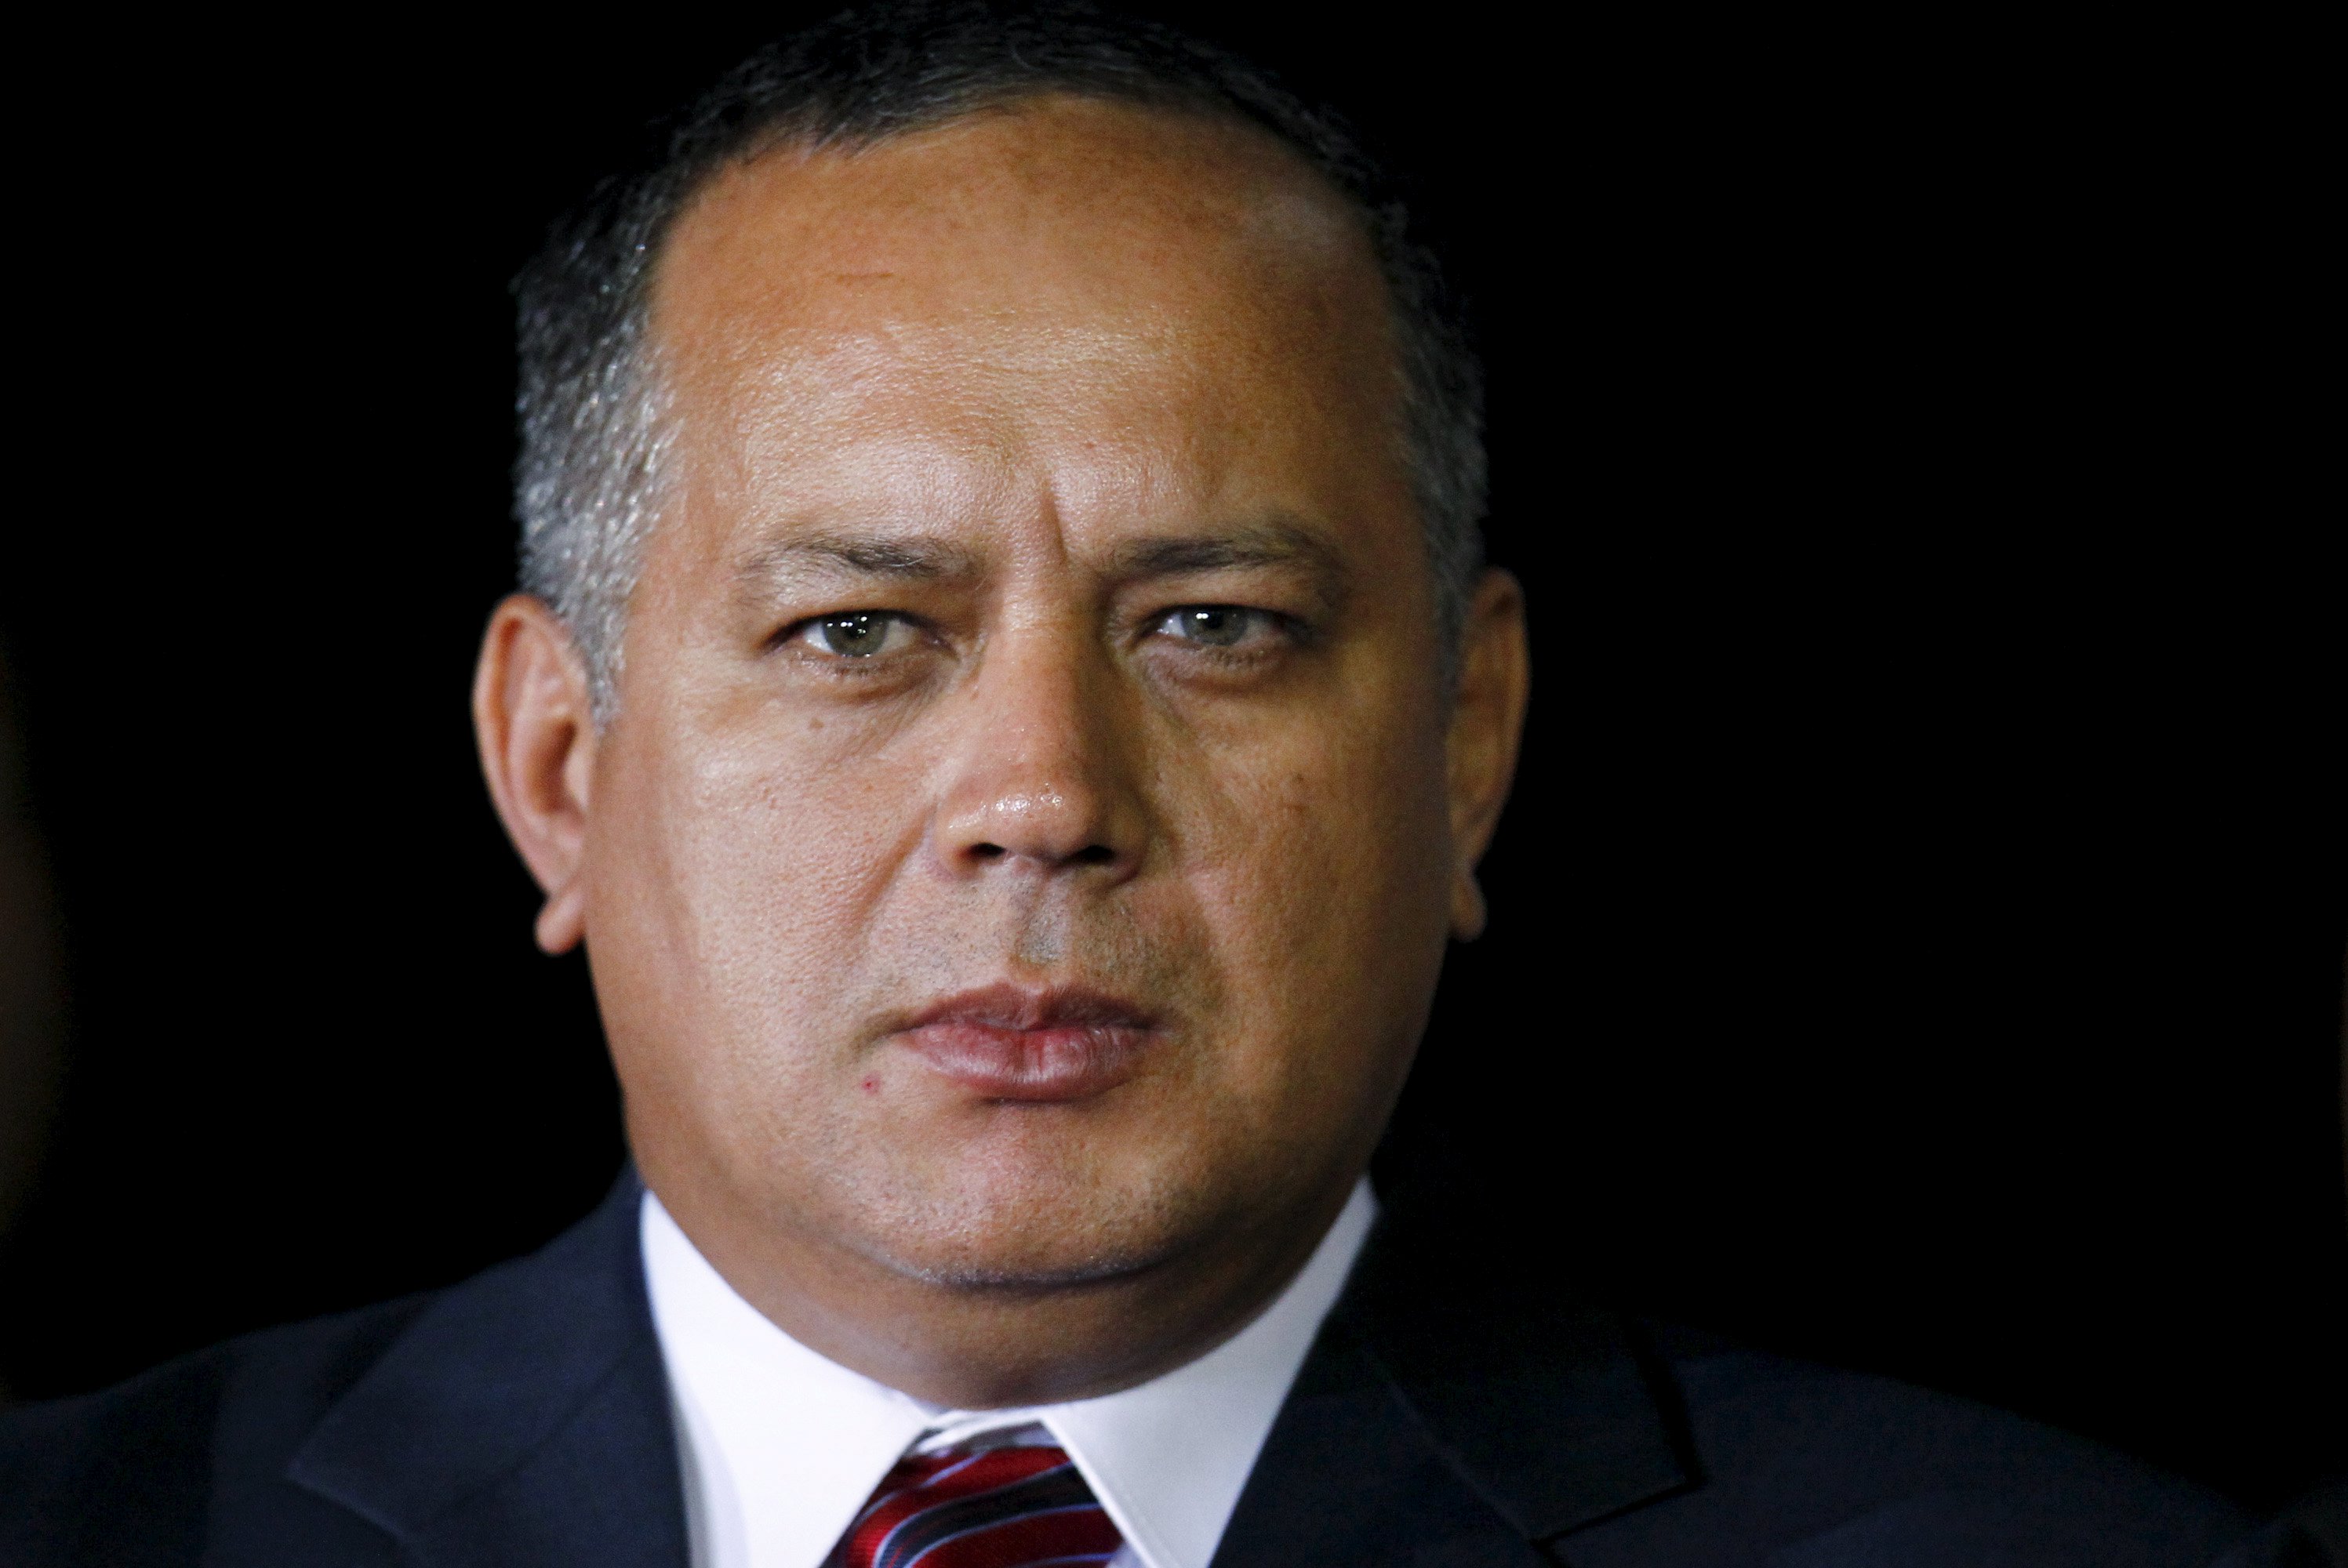 Crónica Parlamentaria: No hay nada contra Cabello